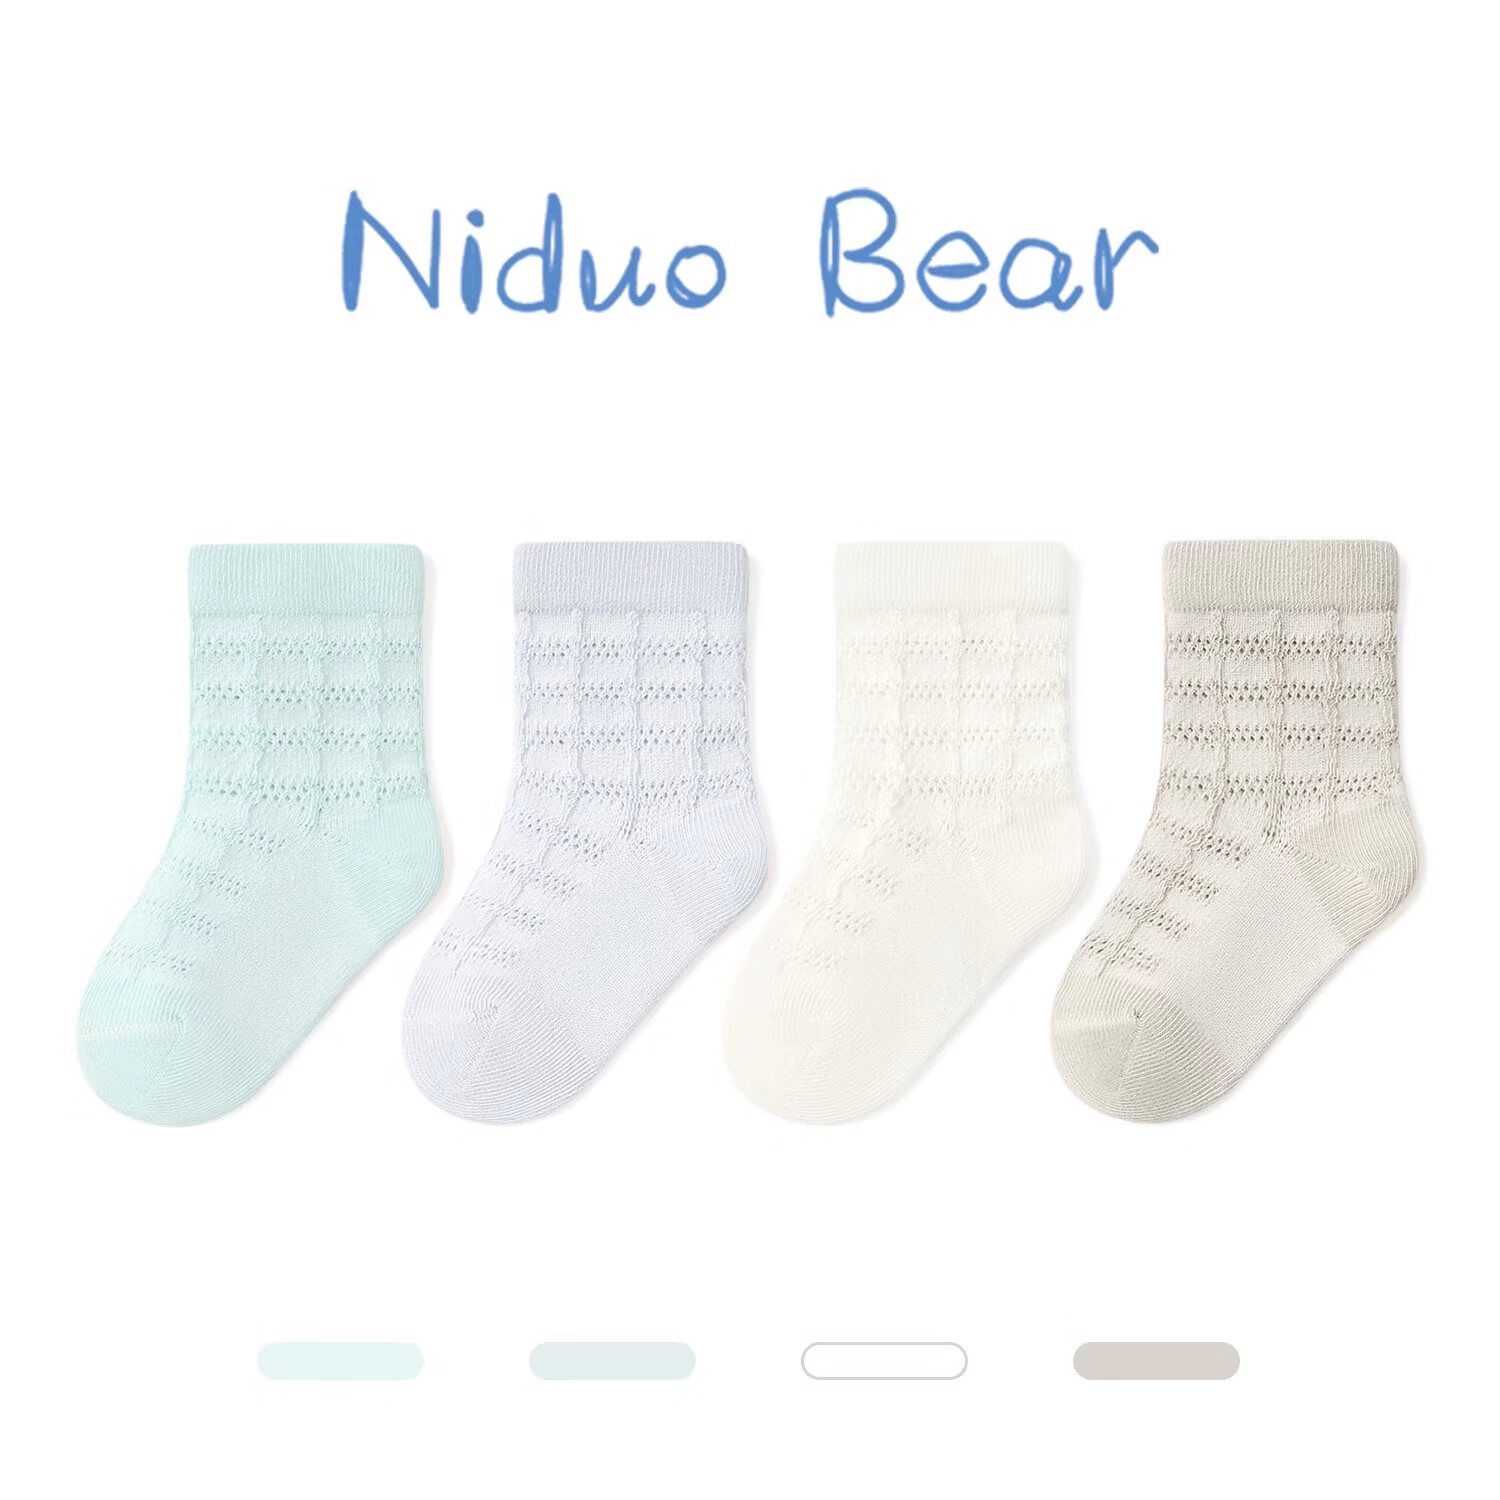 尼多熊宝宝袜子夏季薄款棉袜婴儿无骨袜儿童透气网眼袜松口袜